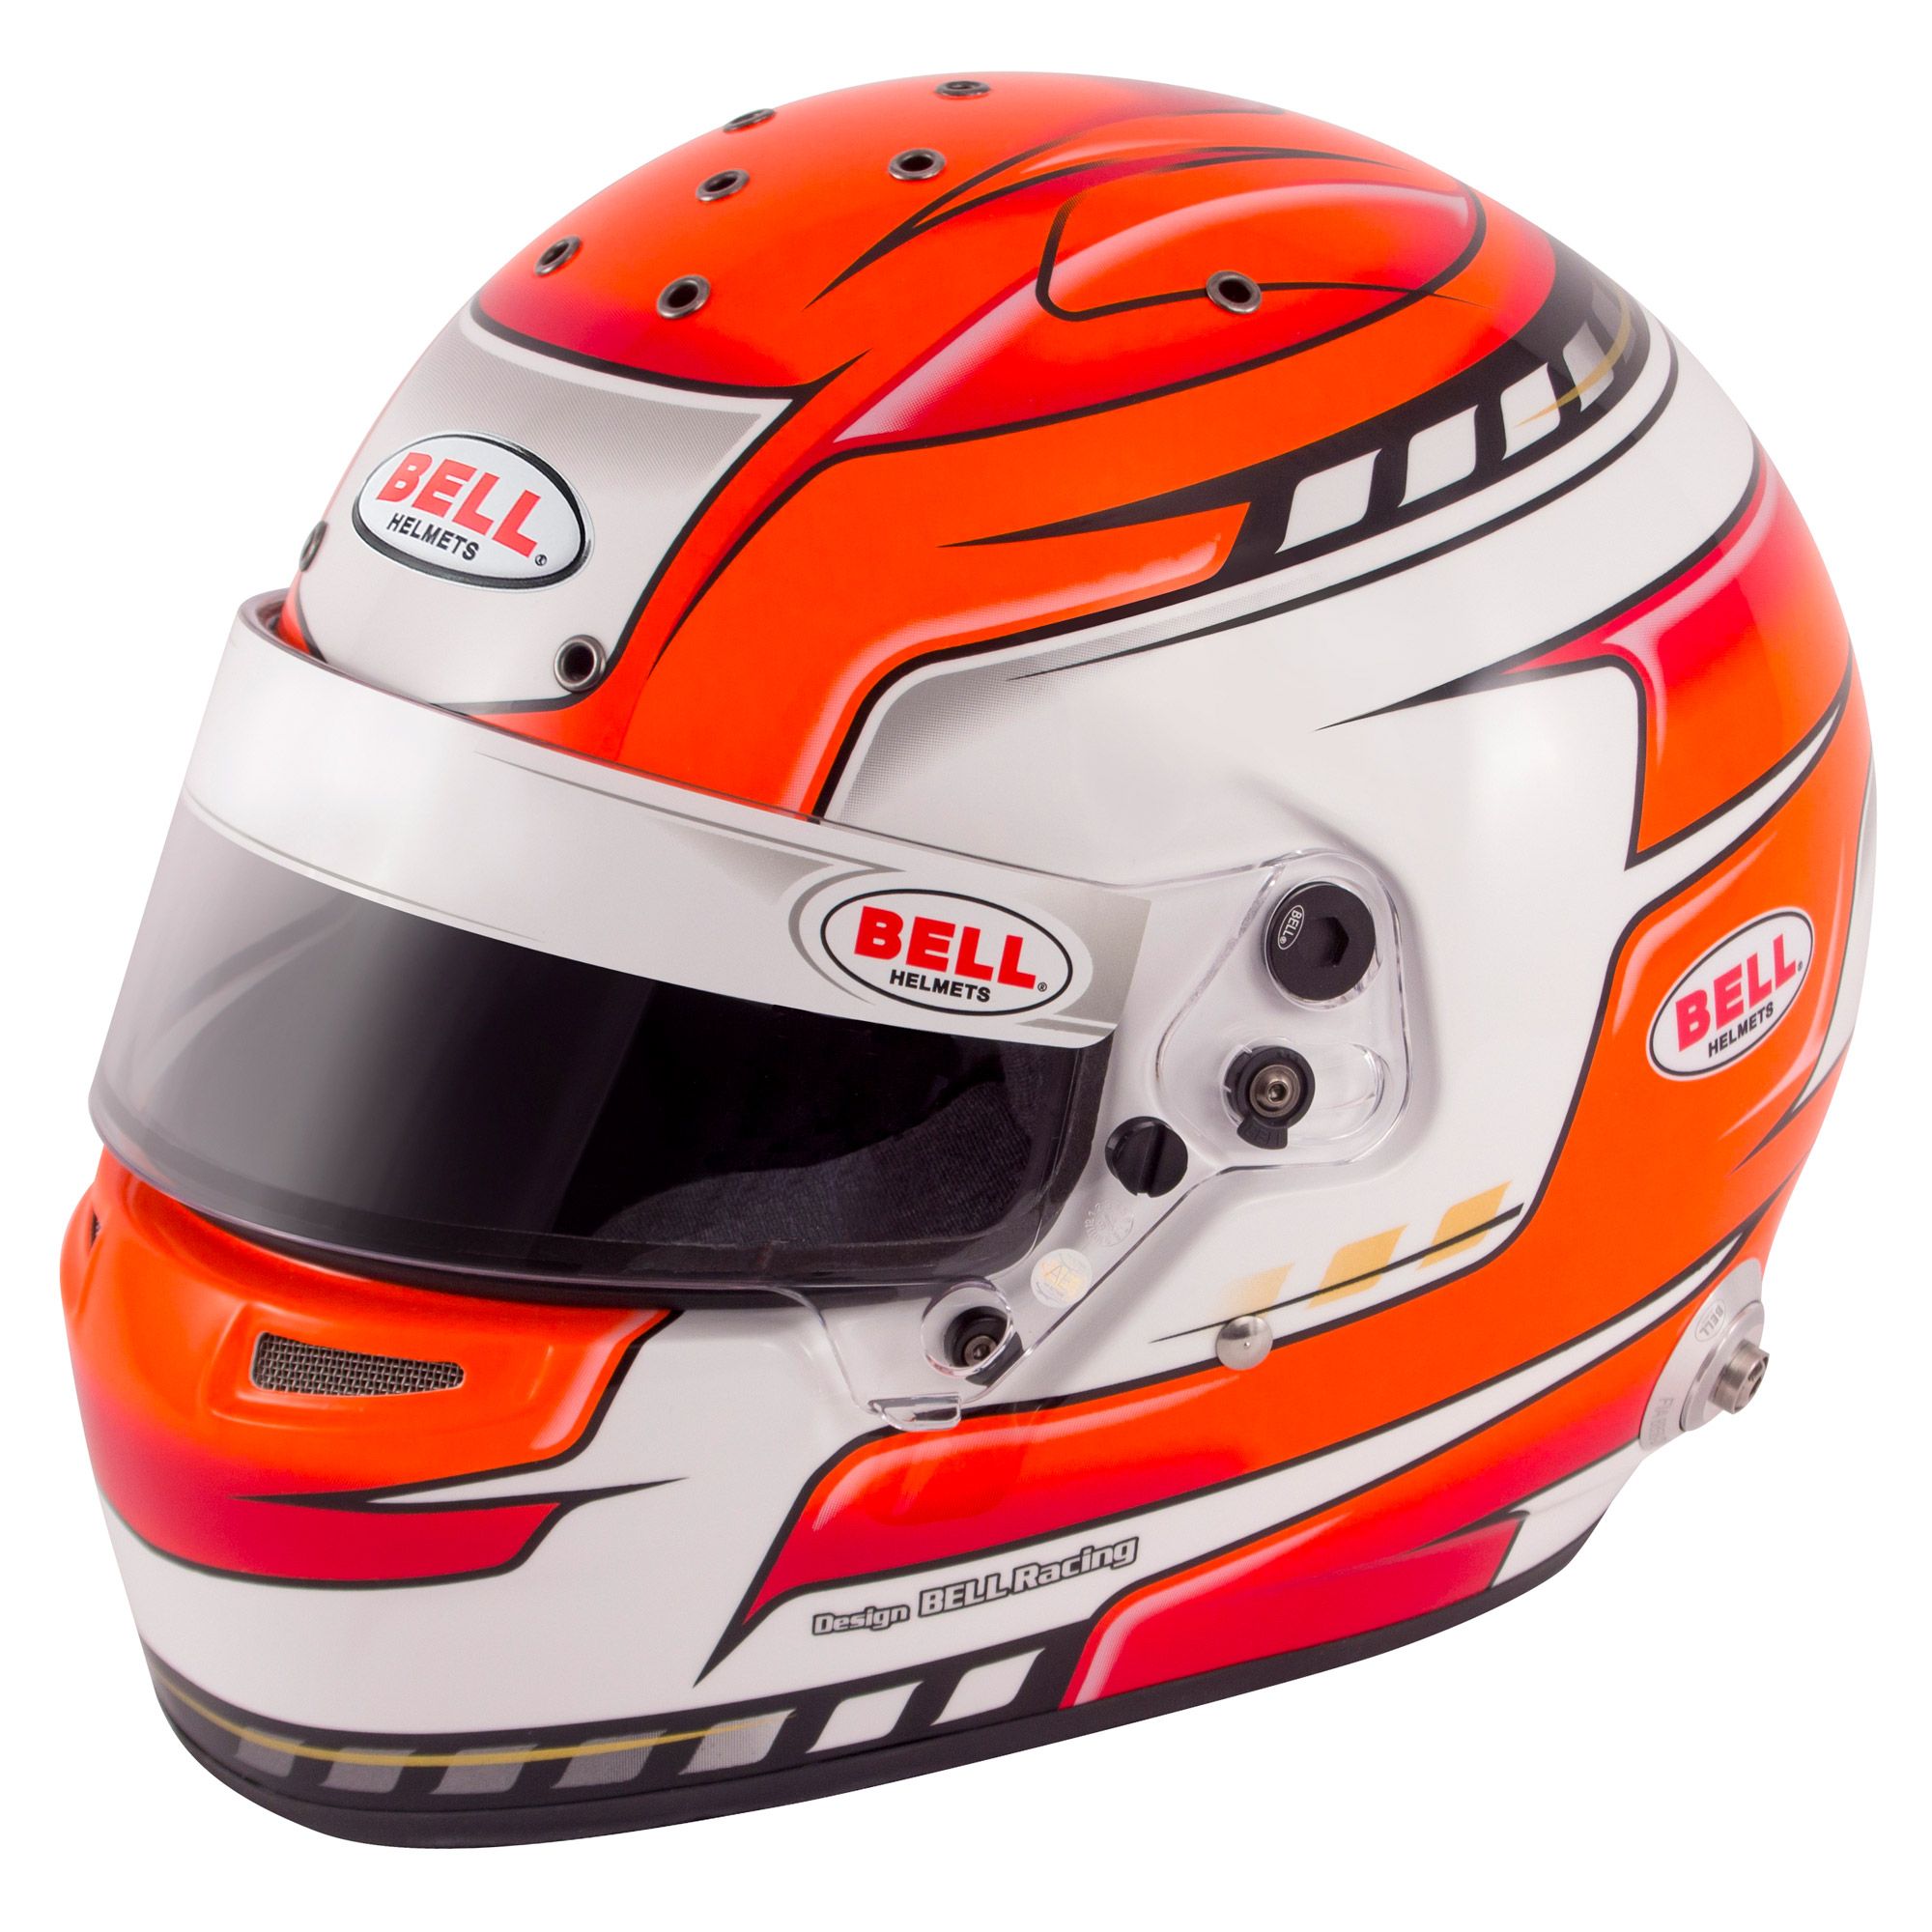 Genuine Bell Helmet/Lid Visor Stickers Pack of 2 Motorsport/Racing/Rally 